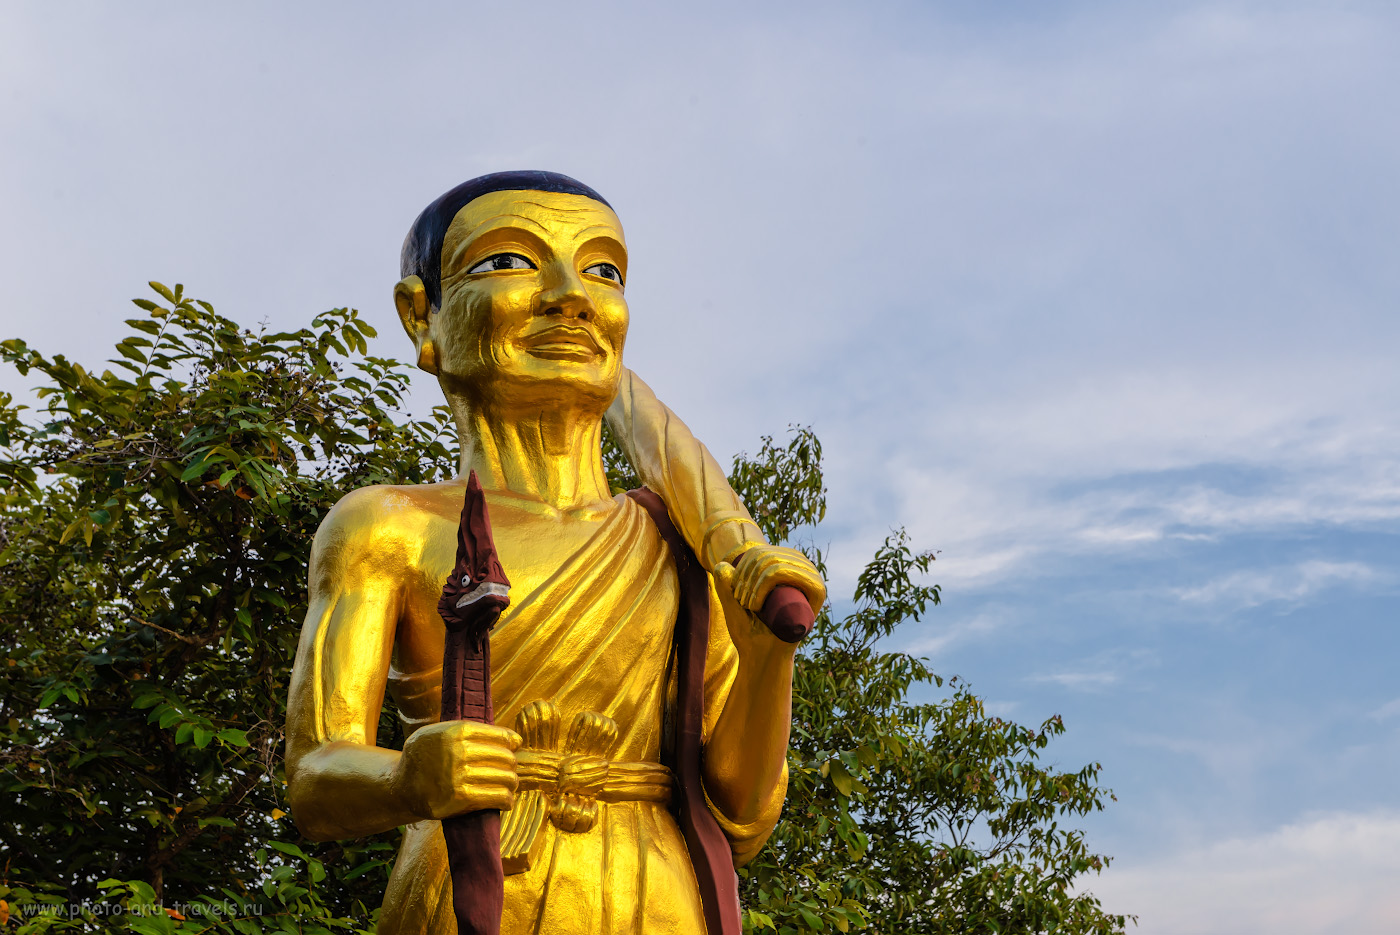 Снимок 26. Скульптура в храме Ват Пхра Яй (Wat Phra Yai) на холме Пратамнак. Отзыв о самостоятельной экскурсии в Паттайе. 1/160, -0.67, 10.0, 360, 70.